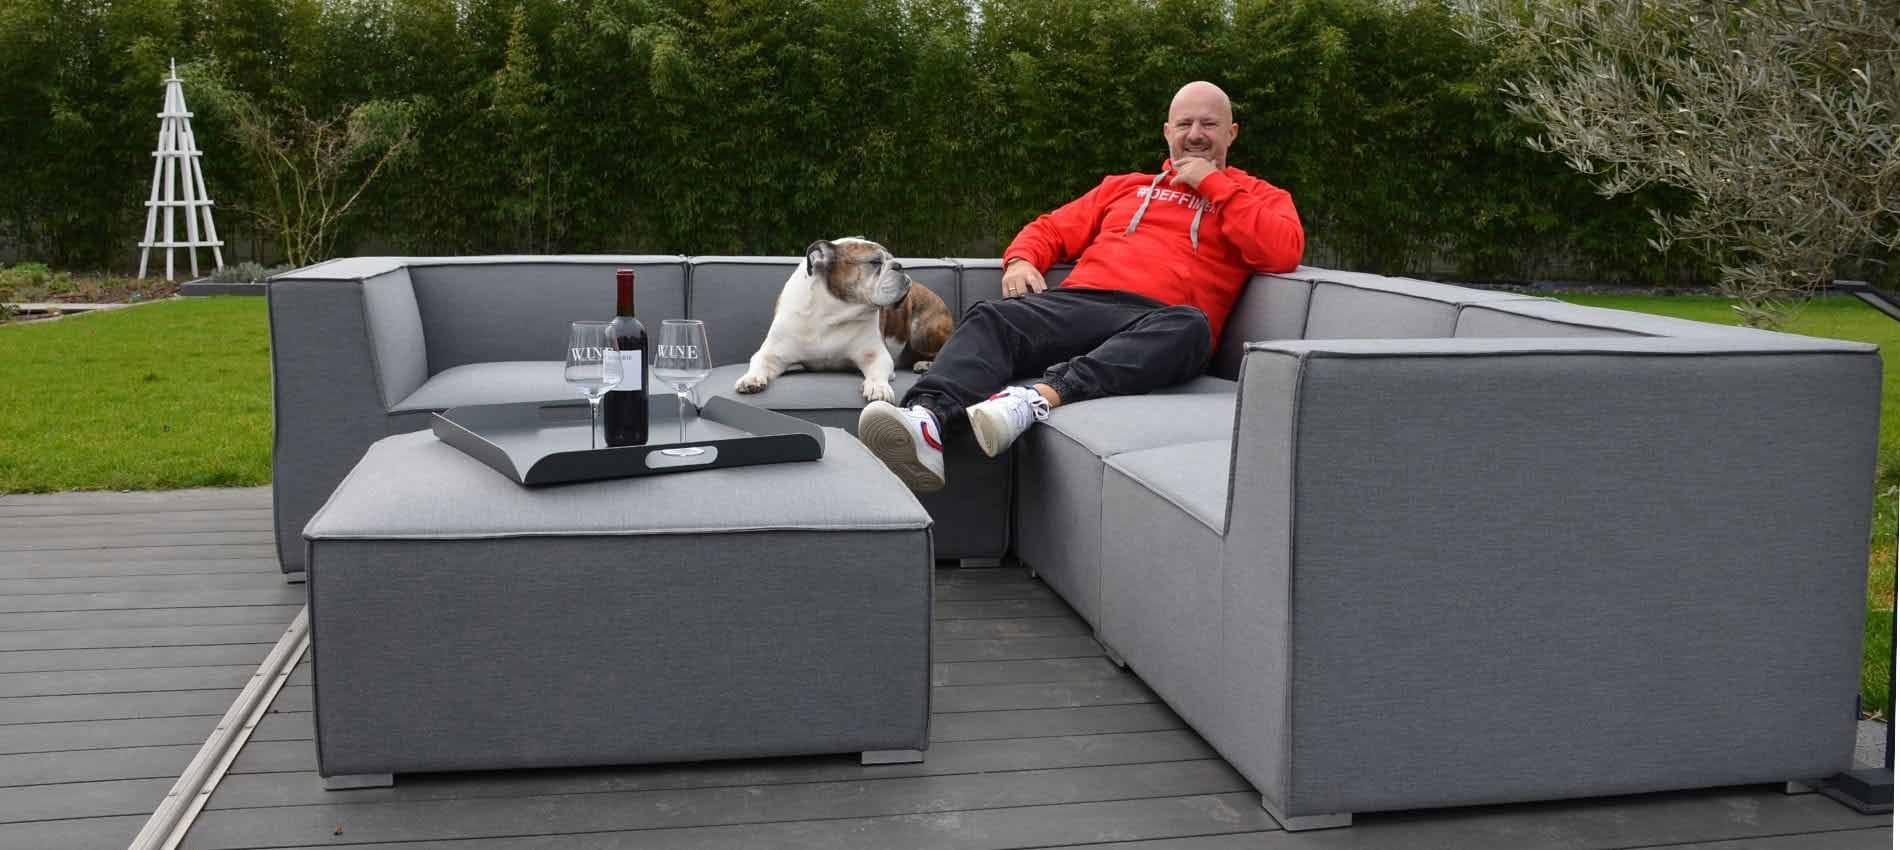 Detlef Steves und Hund Kai Uwe auf Gartenlounge